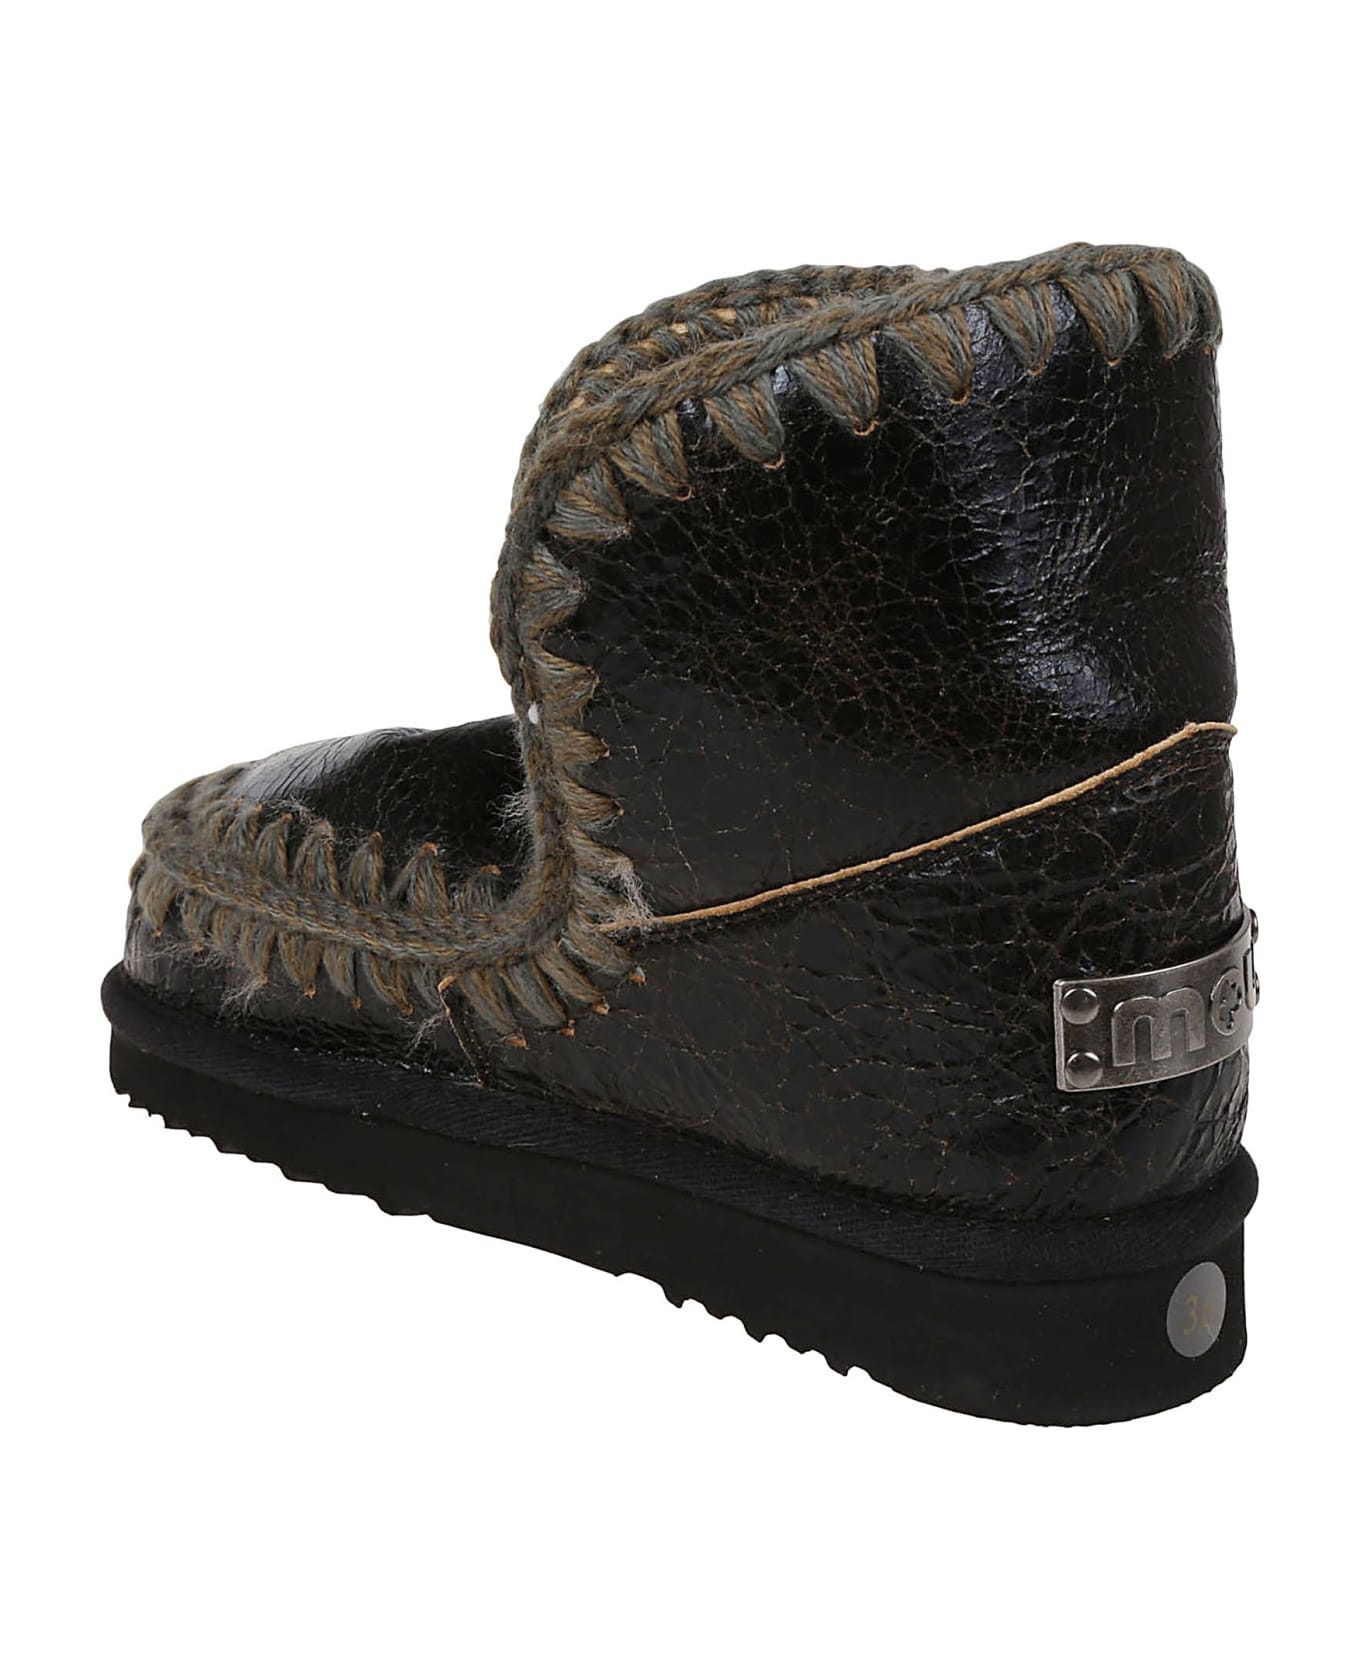 Mou Eskimo Boot 18cm - Wrsdkb Wrinkled Shiny Dark Brown ブーツ